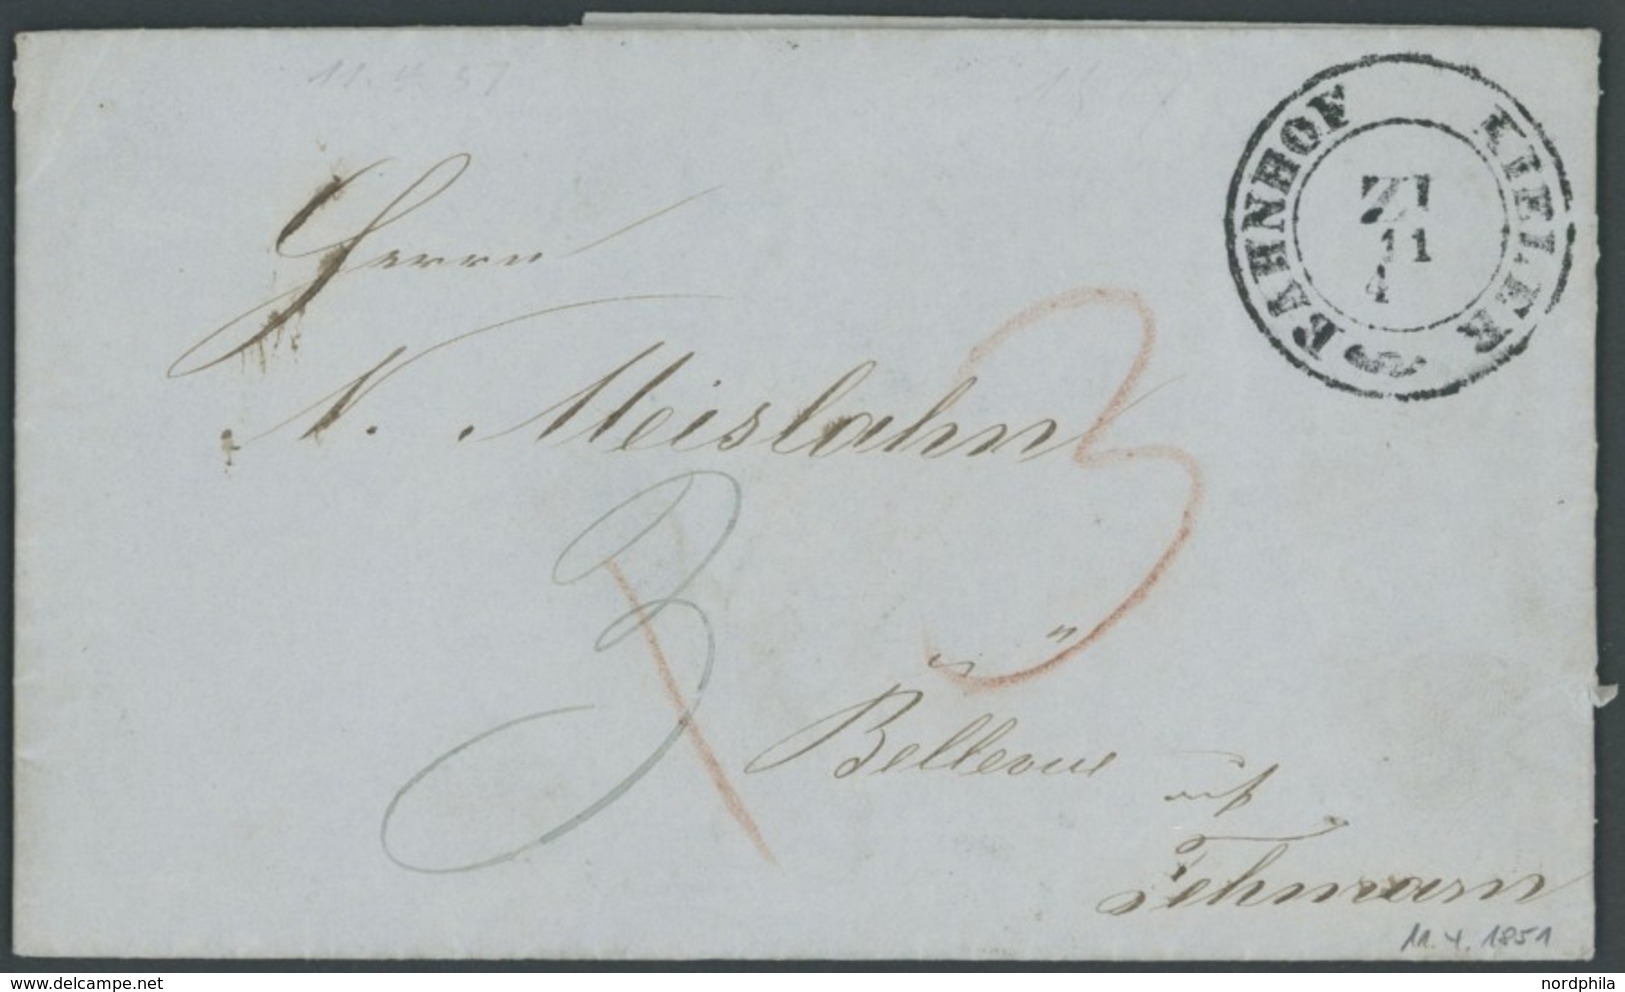 SCHLESWIG-HOLSTEIN 1851, BAHNHOF KIELER Z I, K2 Mit Roten Und Blauen Taxvermerken Nach Fehmarn, Prachtbrief Mit Inhalt - Préphilatélie